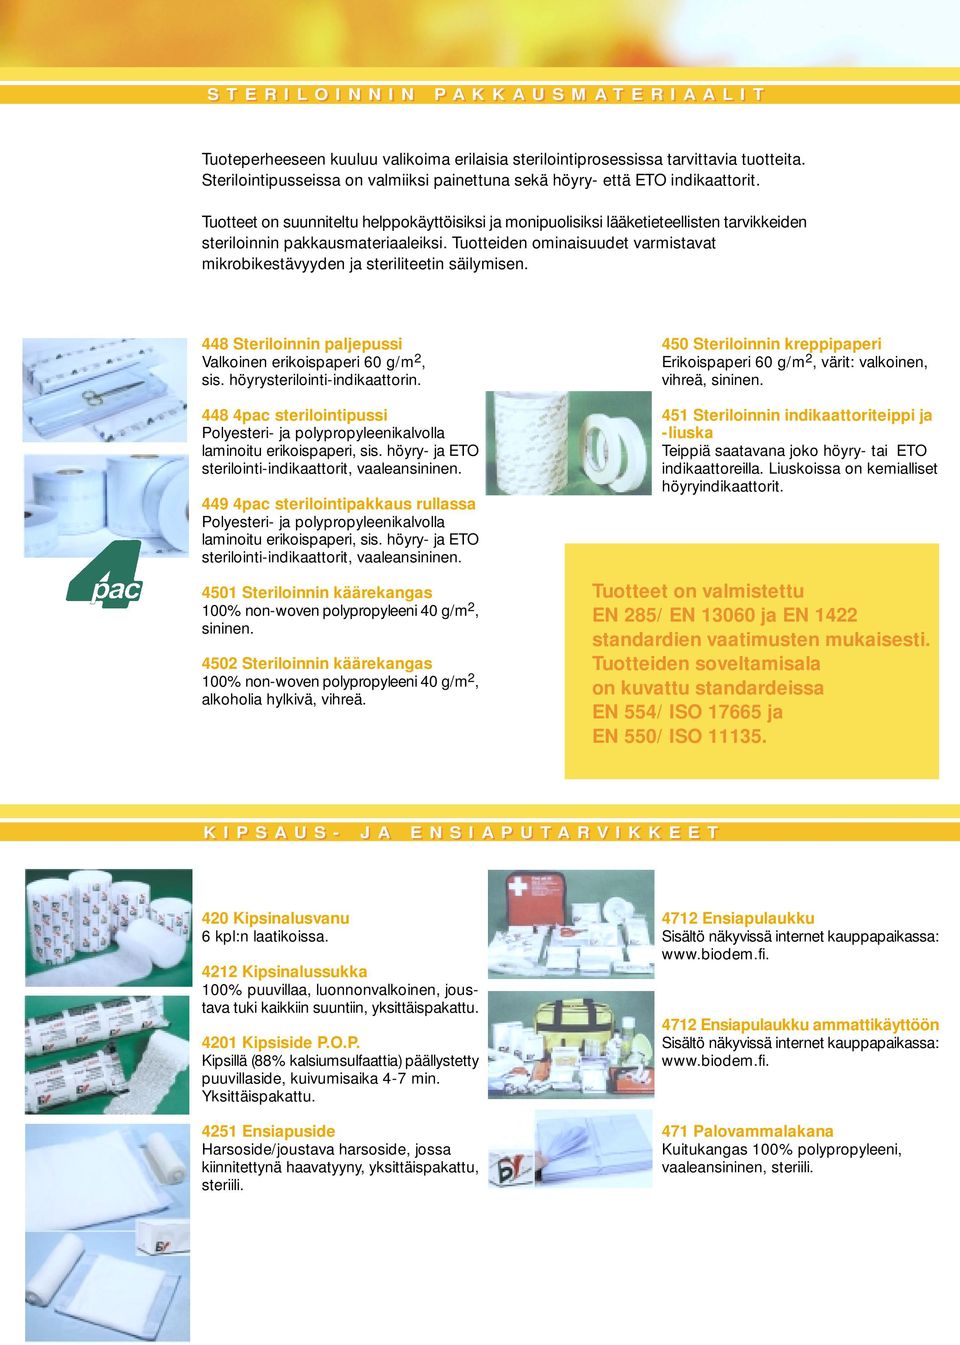 Tuotteet on suunniteltu helppokäyttöisiksi ja monipuolisiksi lääketieteellisten tarvikkeiden steriloinnin pakkausmateriaaleiksi.